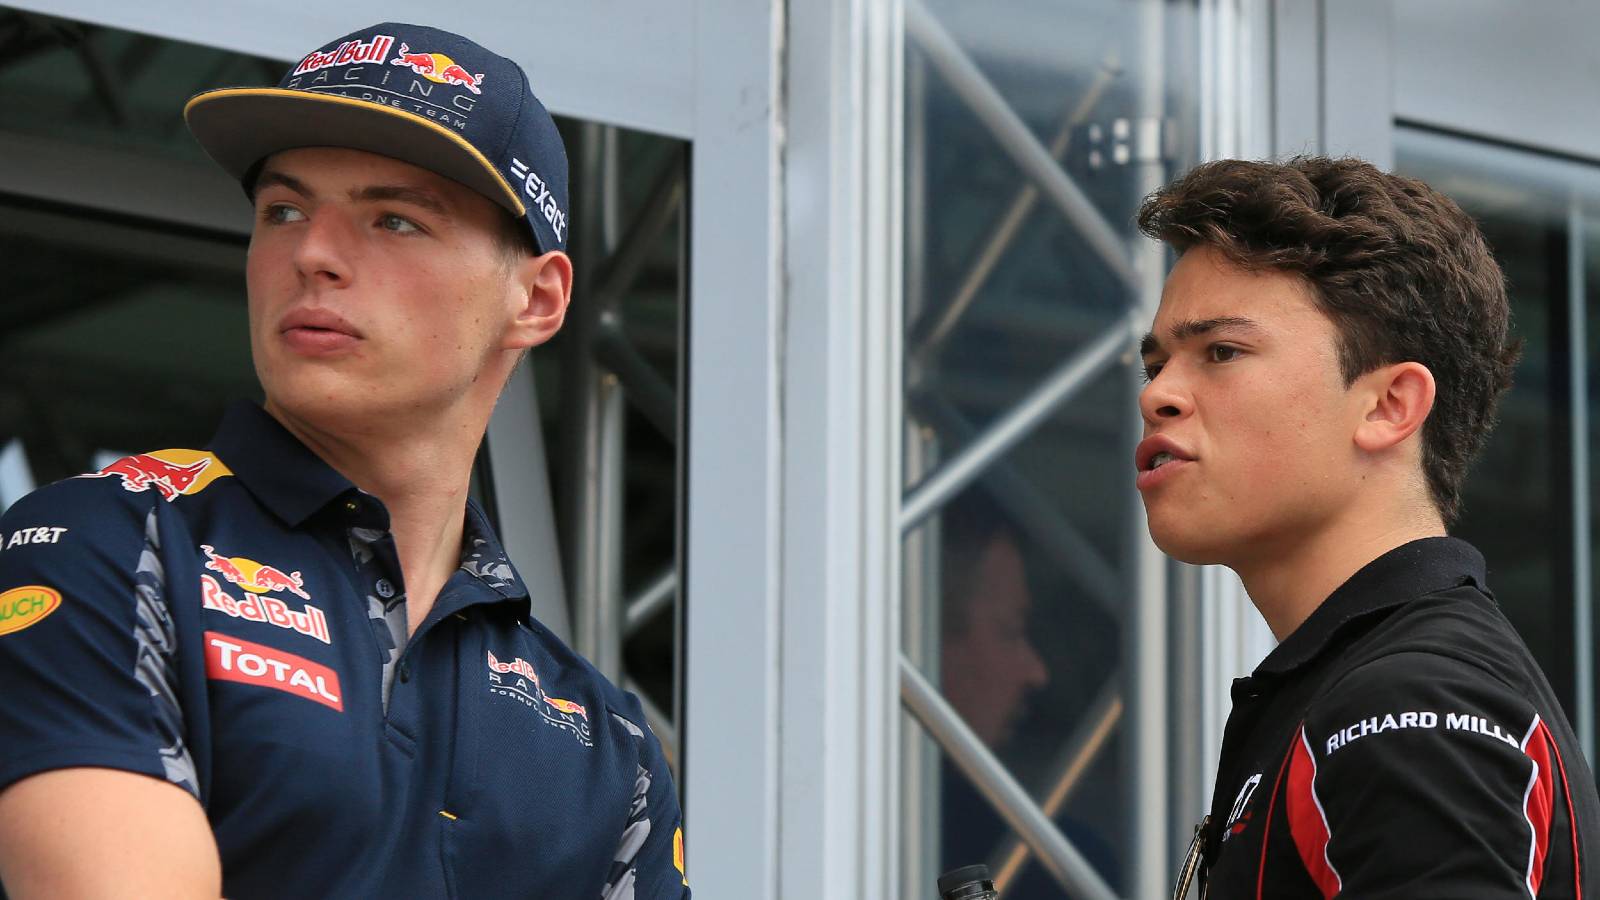 ‘Max adalah kakak saya di paddock F1’, kata de Vries